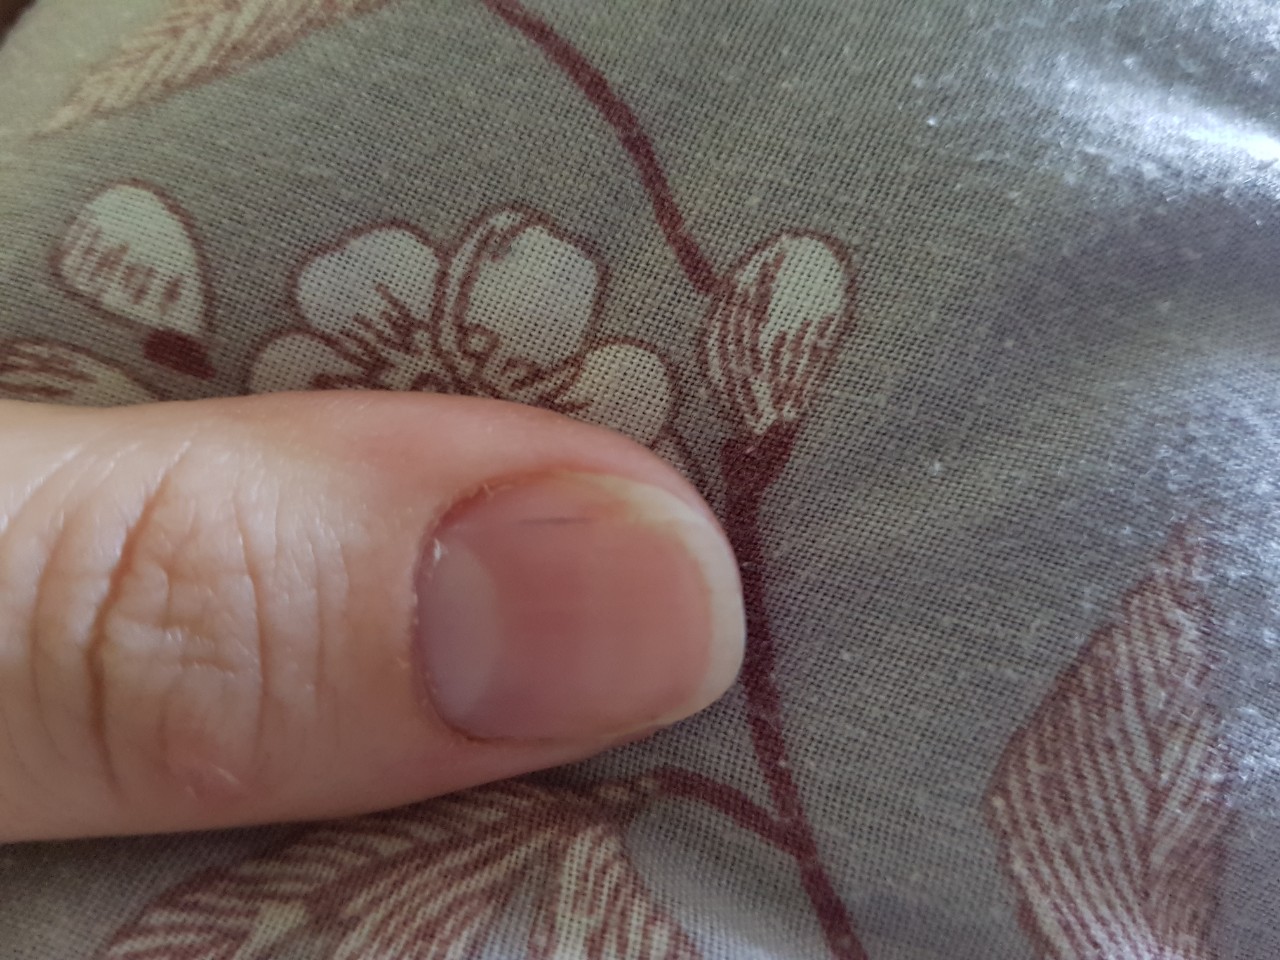 Темная полоска на ногте указательного пальца левой руки